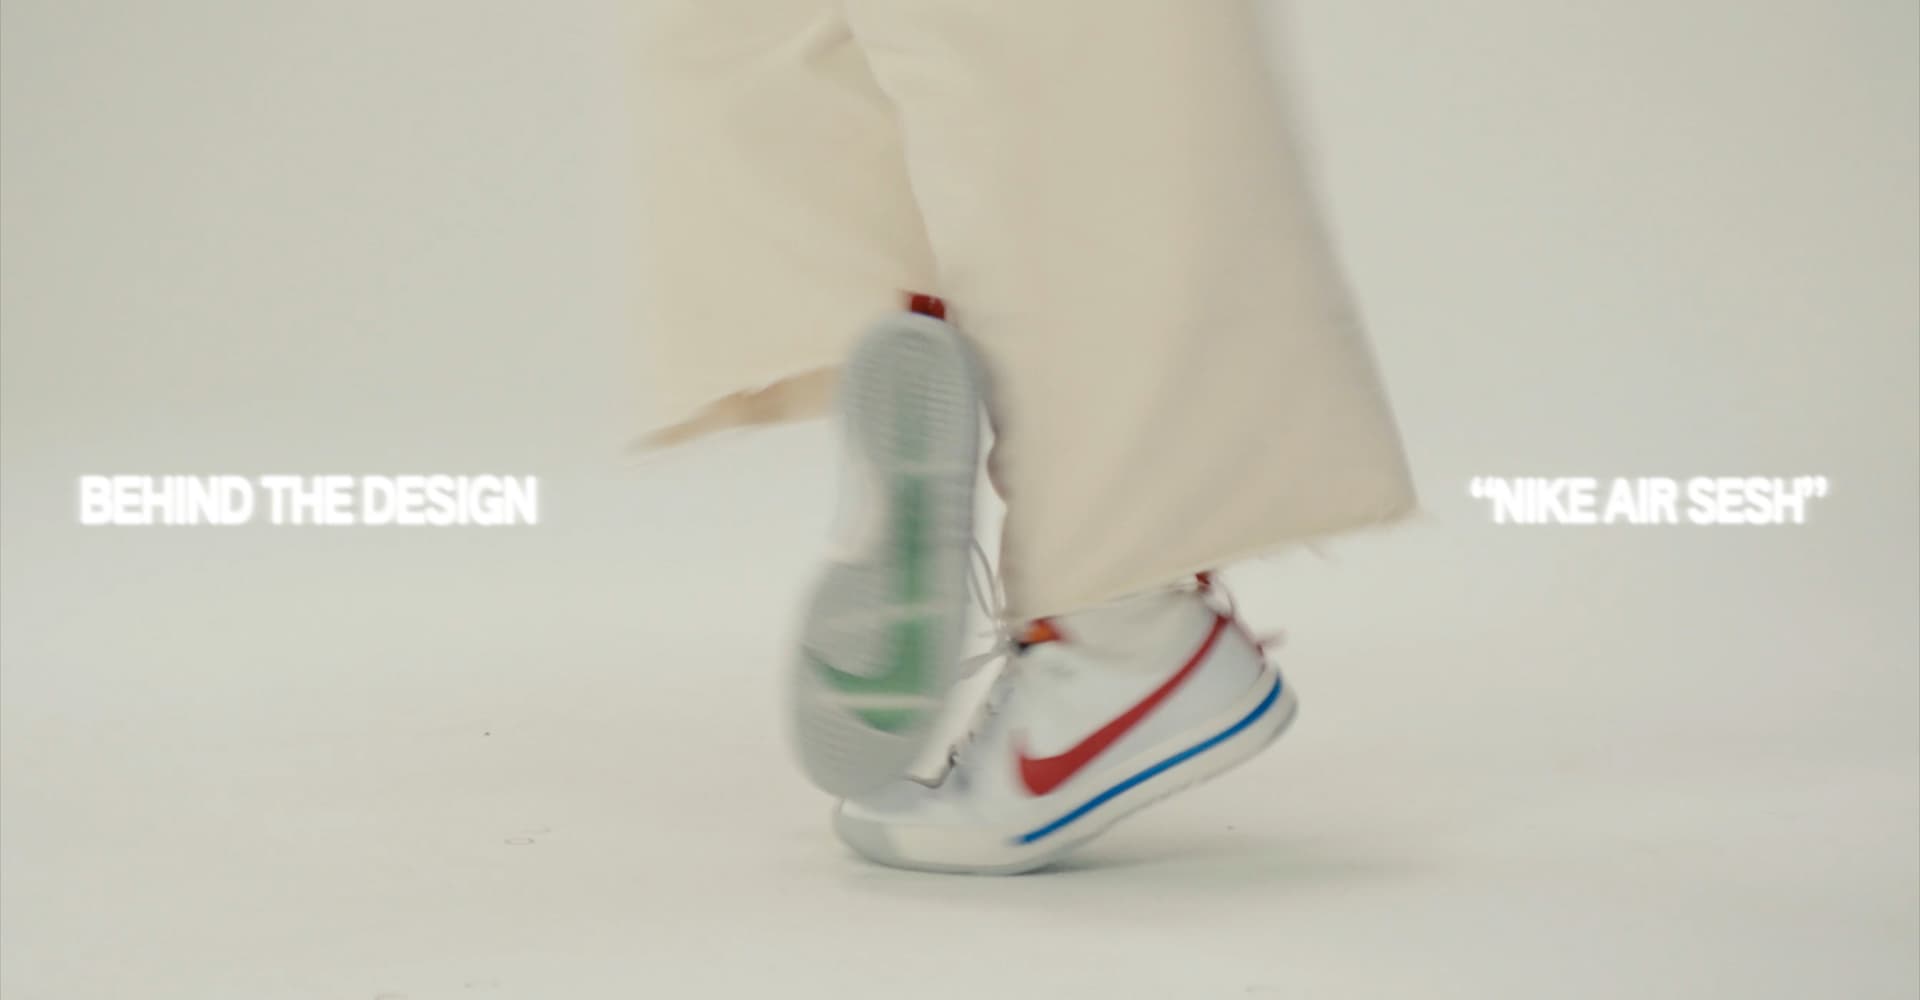 Nike Air Sesh: A Shoe Designed For Dancers. Nike.com